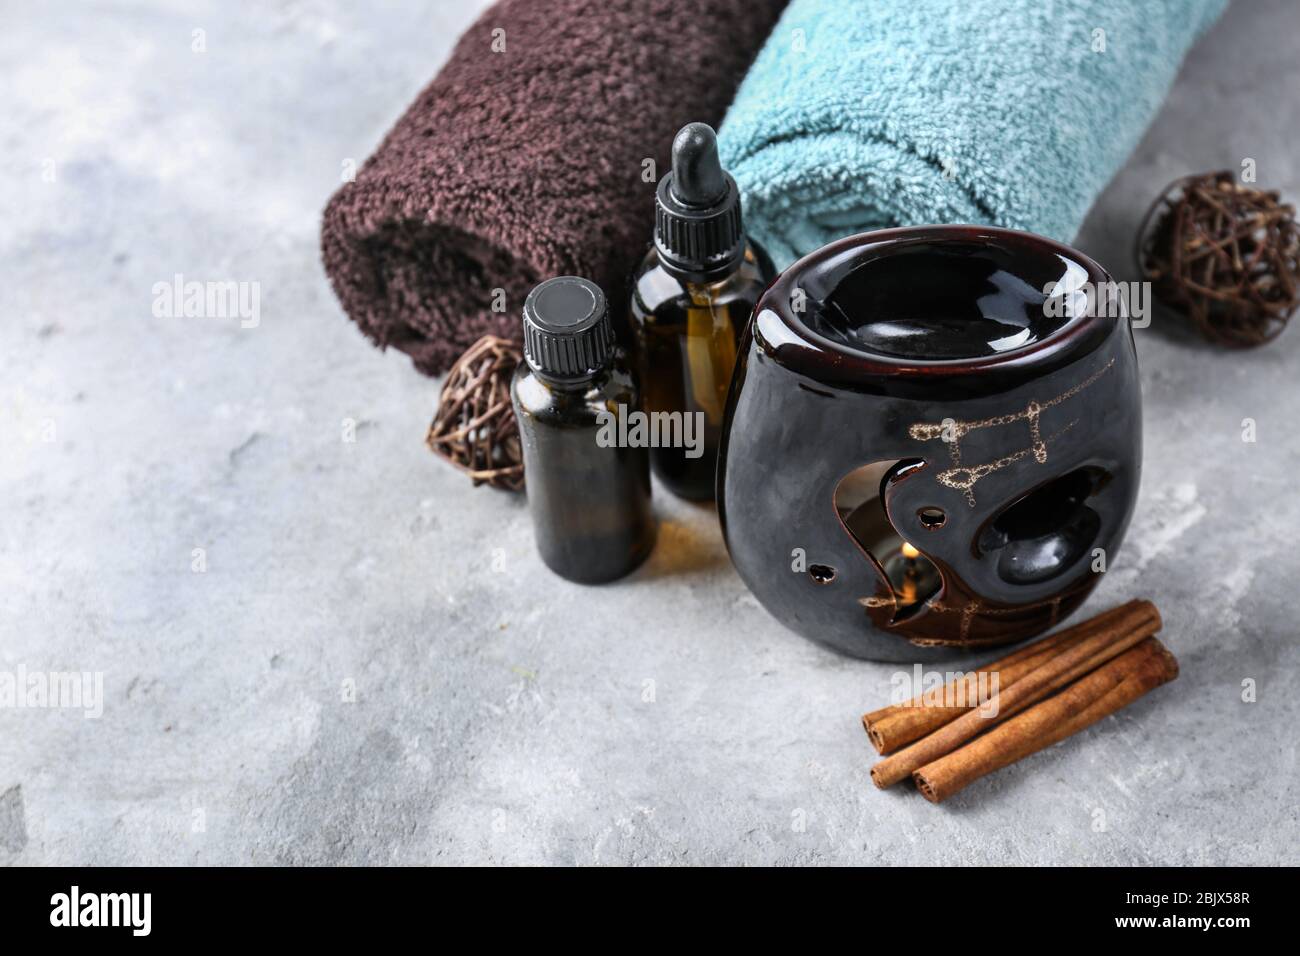 Lampada aromatica, asciugamani e bottiglie di olio sul tavolo Foto Stock